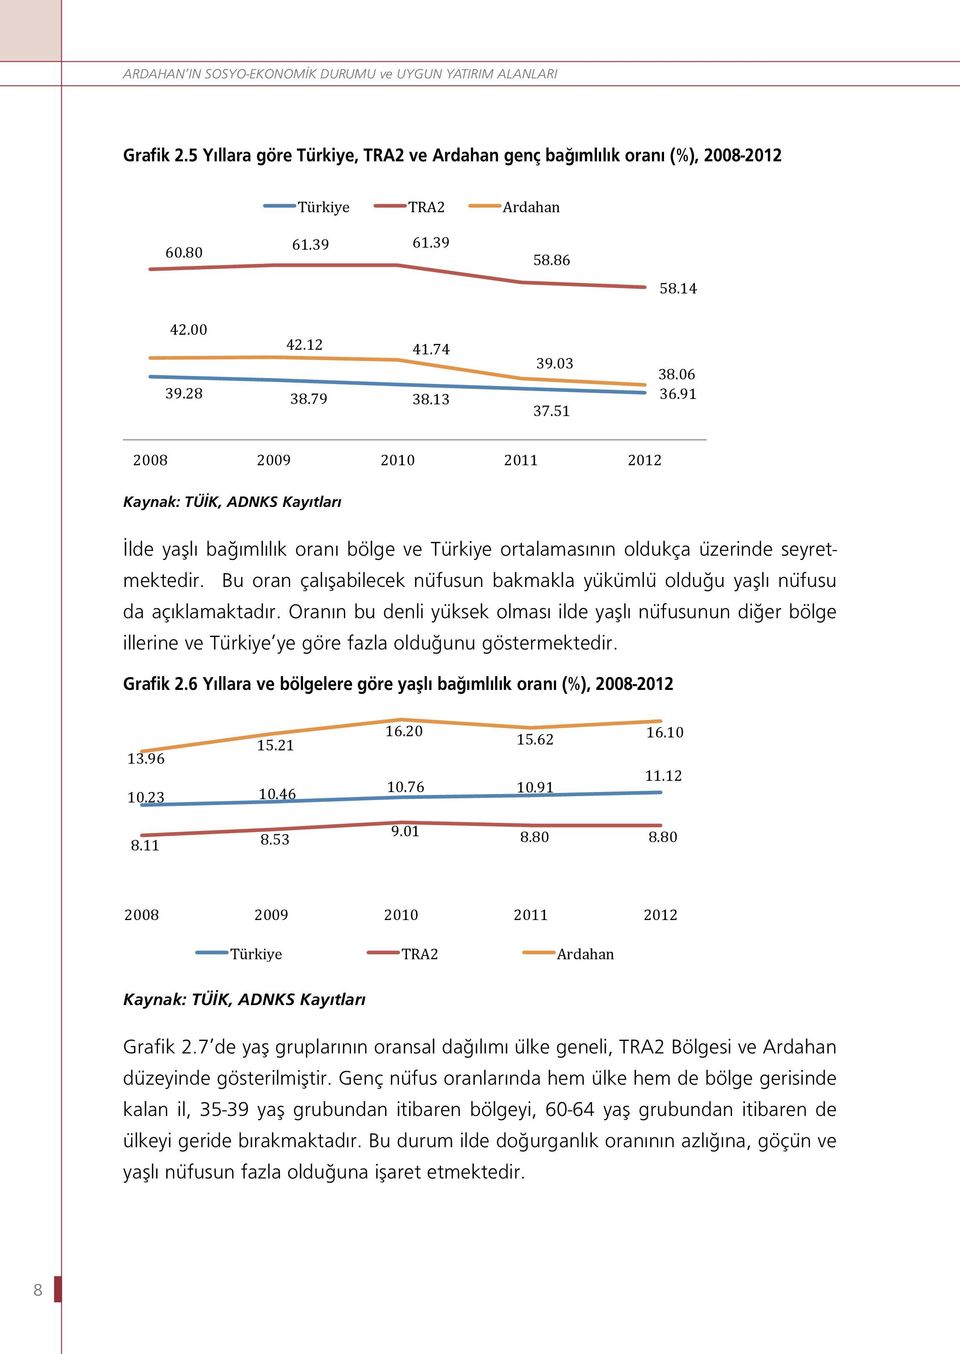 51 2008 2009 2010 2011 2012 Kaynak: 2008 TÜİK, ADNKS 2009 Kayıtları 2010 2011 2012 İlde yaşlı bağımlılık oranı bölge ve Türkiye ortalamasının oldukça üzerinde seyretmektedir.